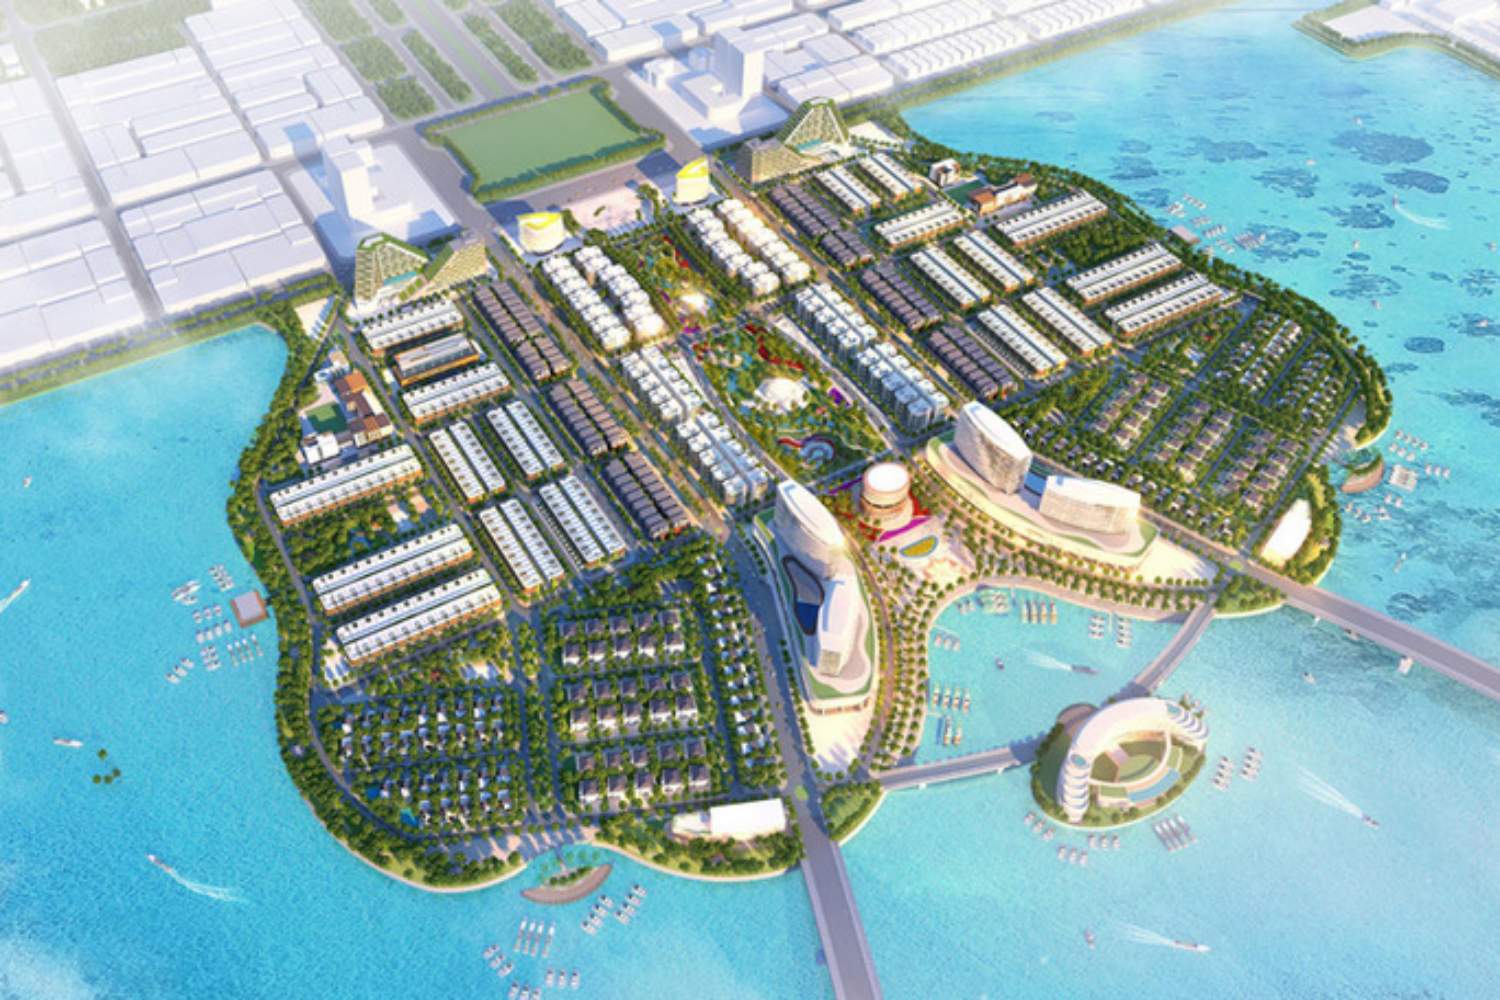 Danh sách 12 dự án bất động sản vừa được chấp thuận đầu tư ở Kiên Giang